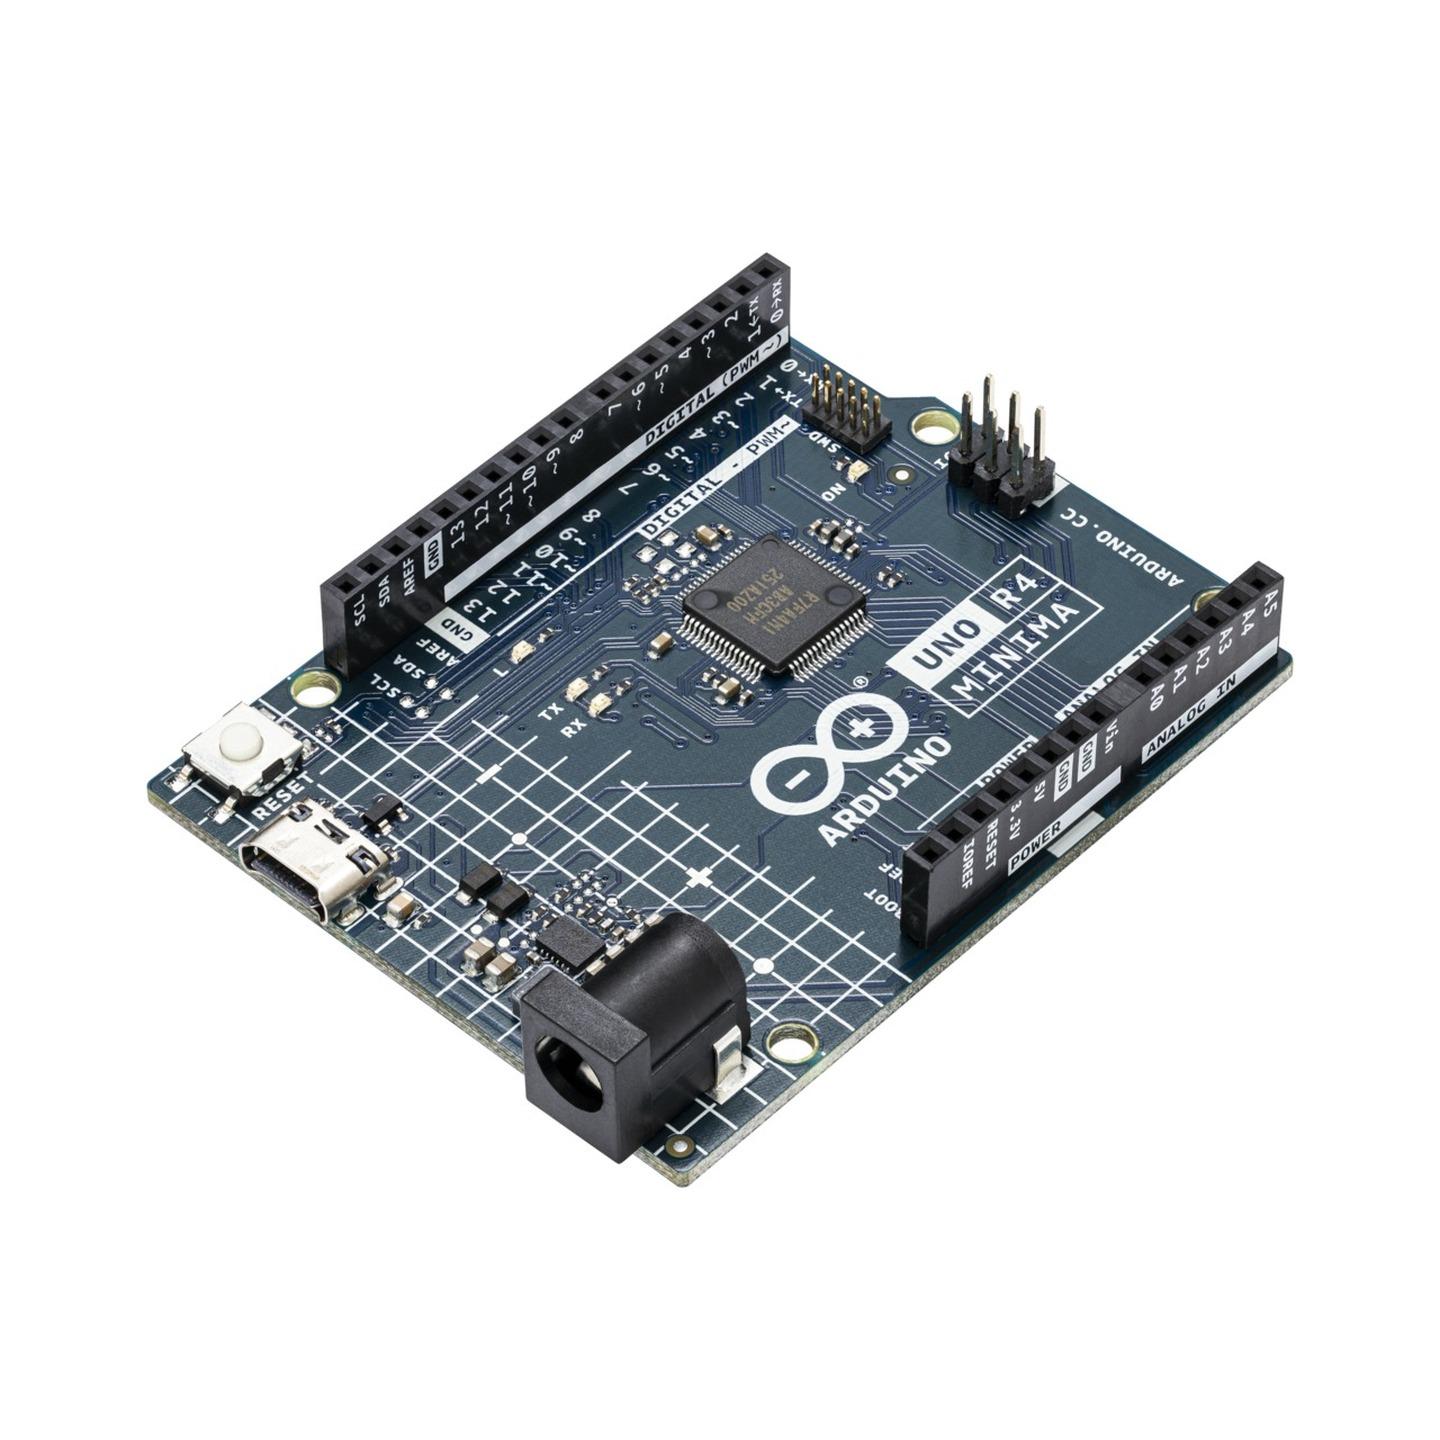 Arduino UNO Rev4 Minima Development Board